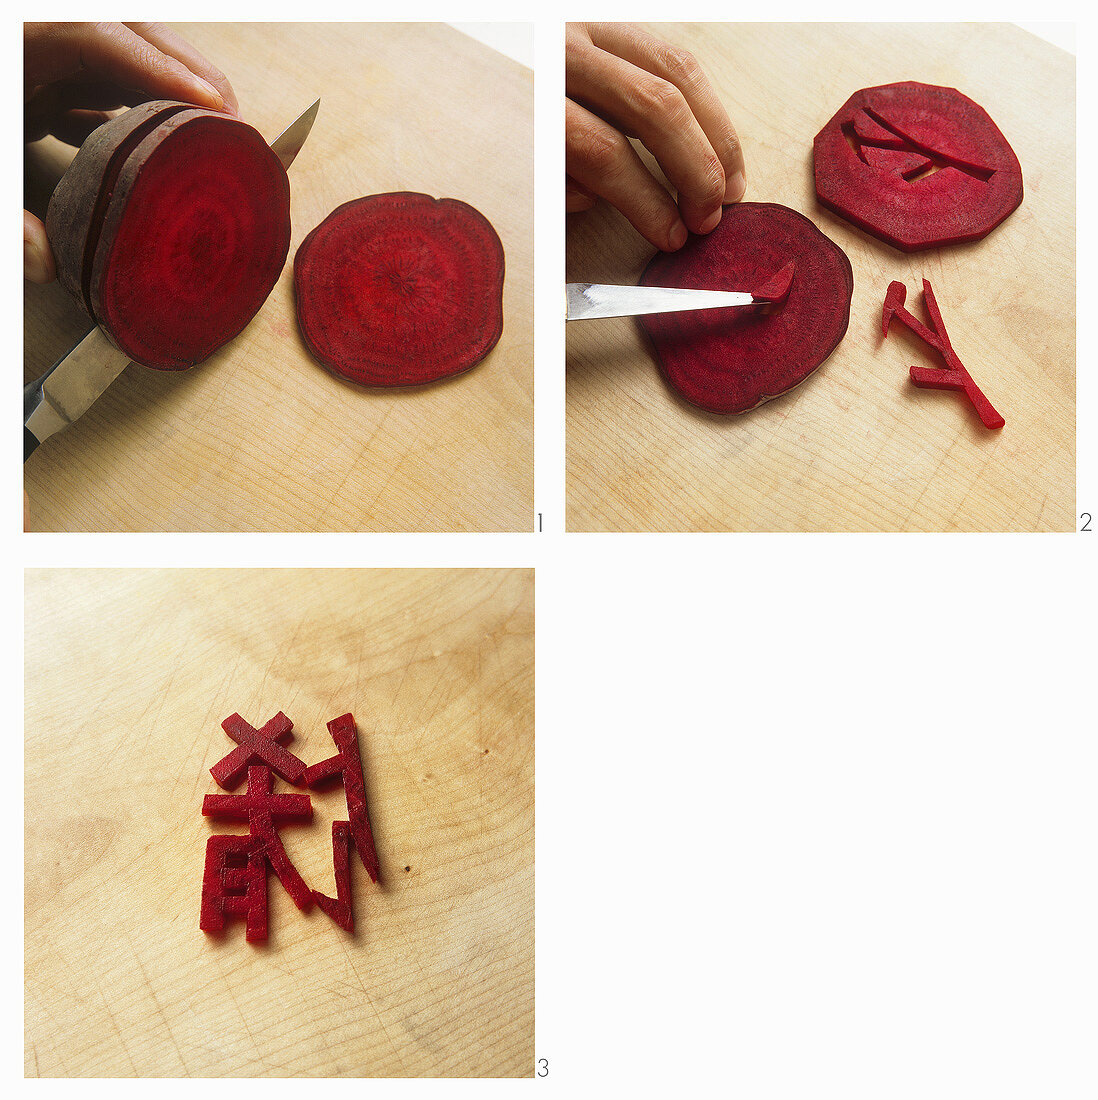 Chinesische Schriftzeichen aus Roter Bete schneiden